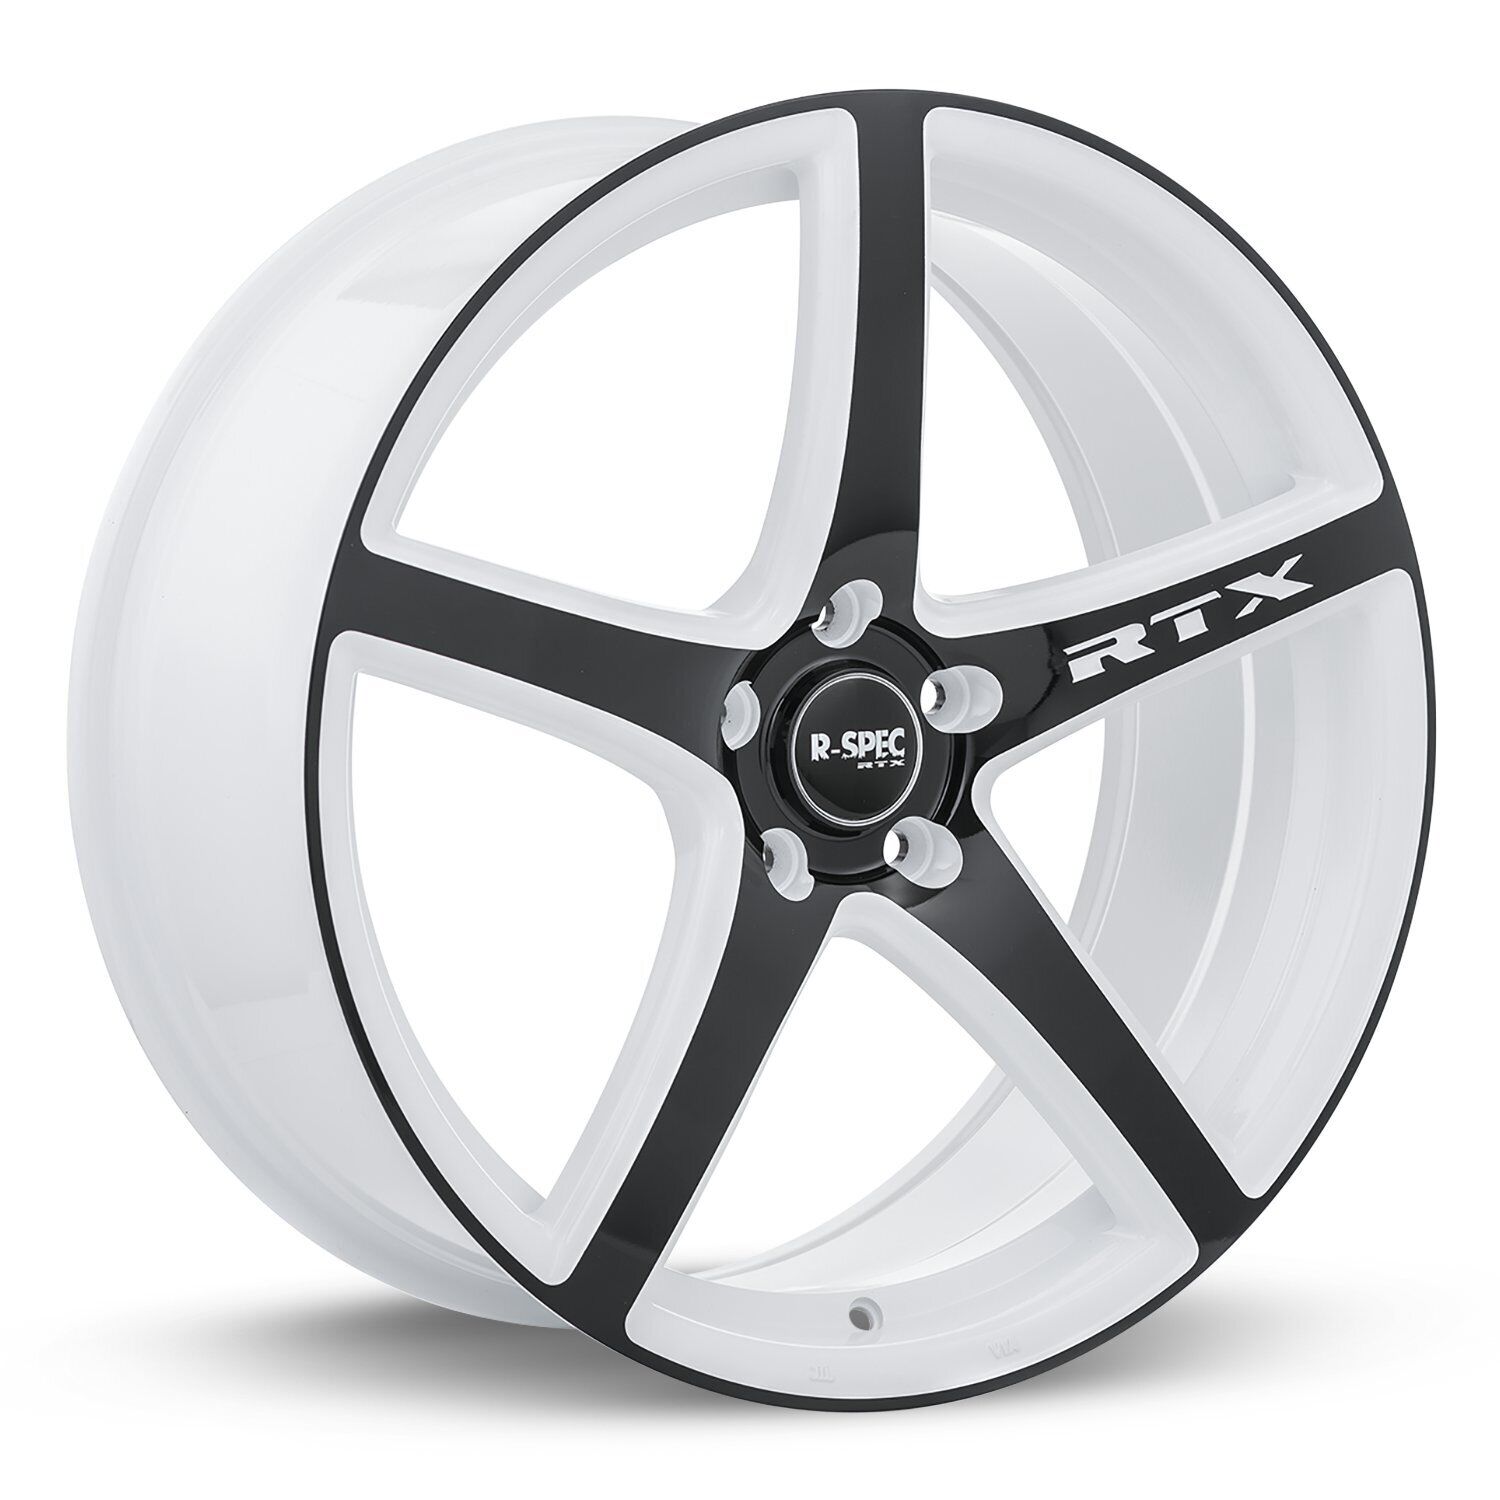 One 18 inch Wheel Rim For 2012-2017 Buick Verano RTX 081108 18x8 5x114.3 ET45 CB